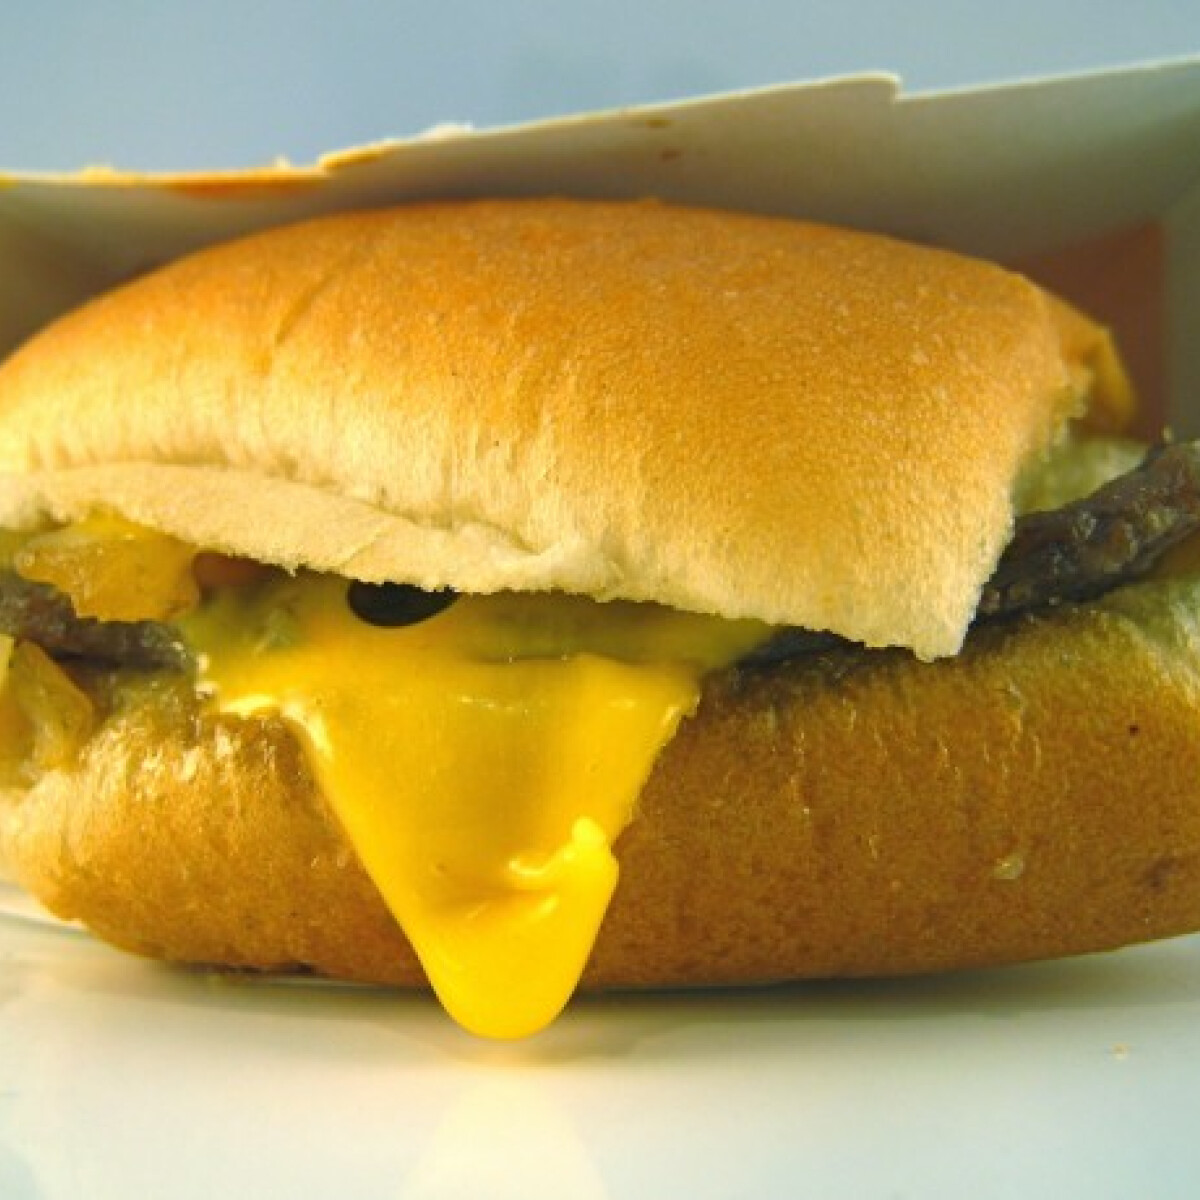 A sajtburgermúmiák köztünk élnek?